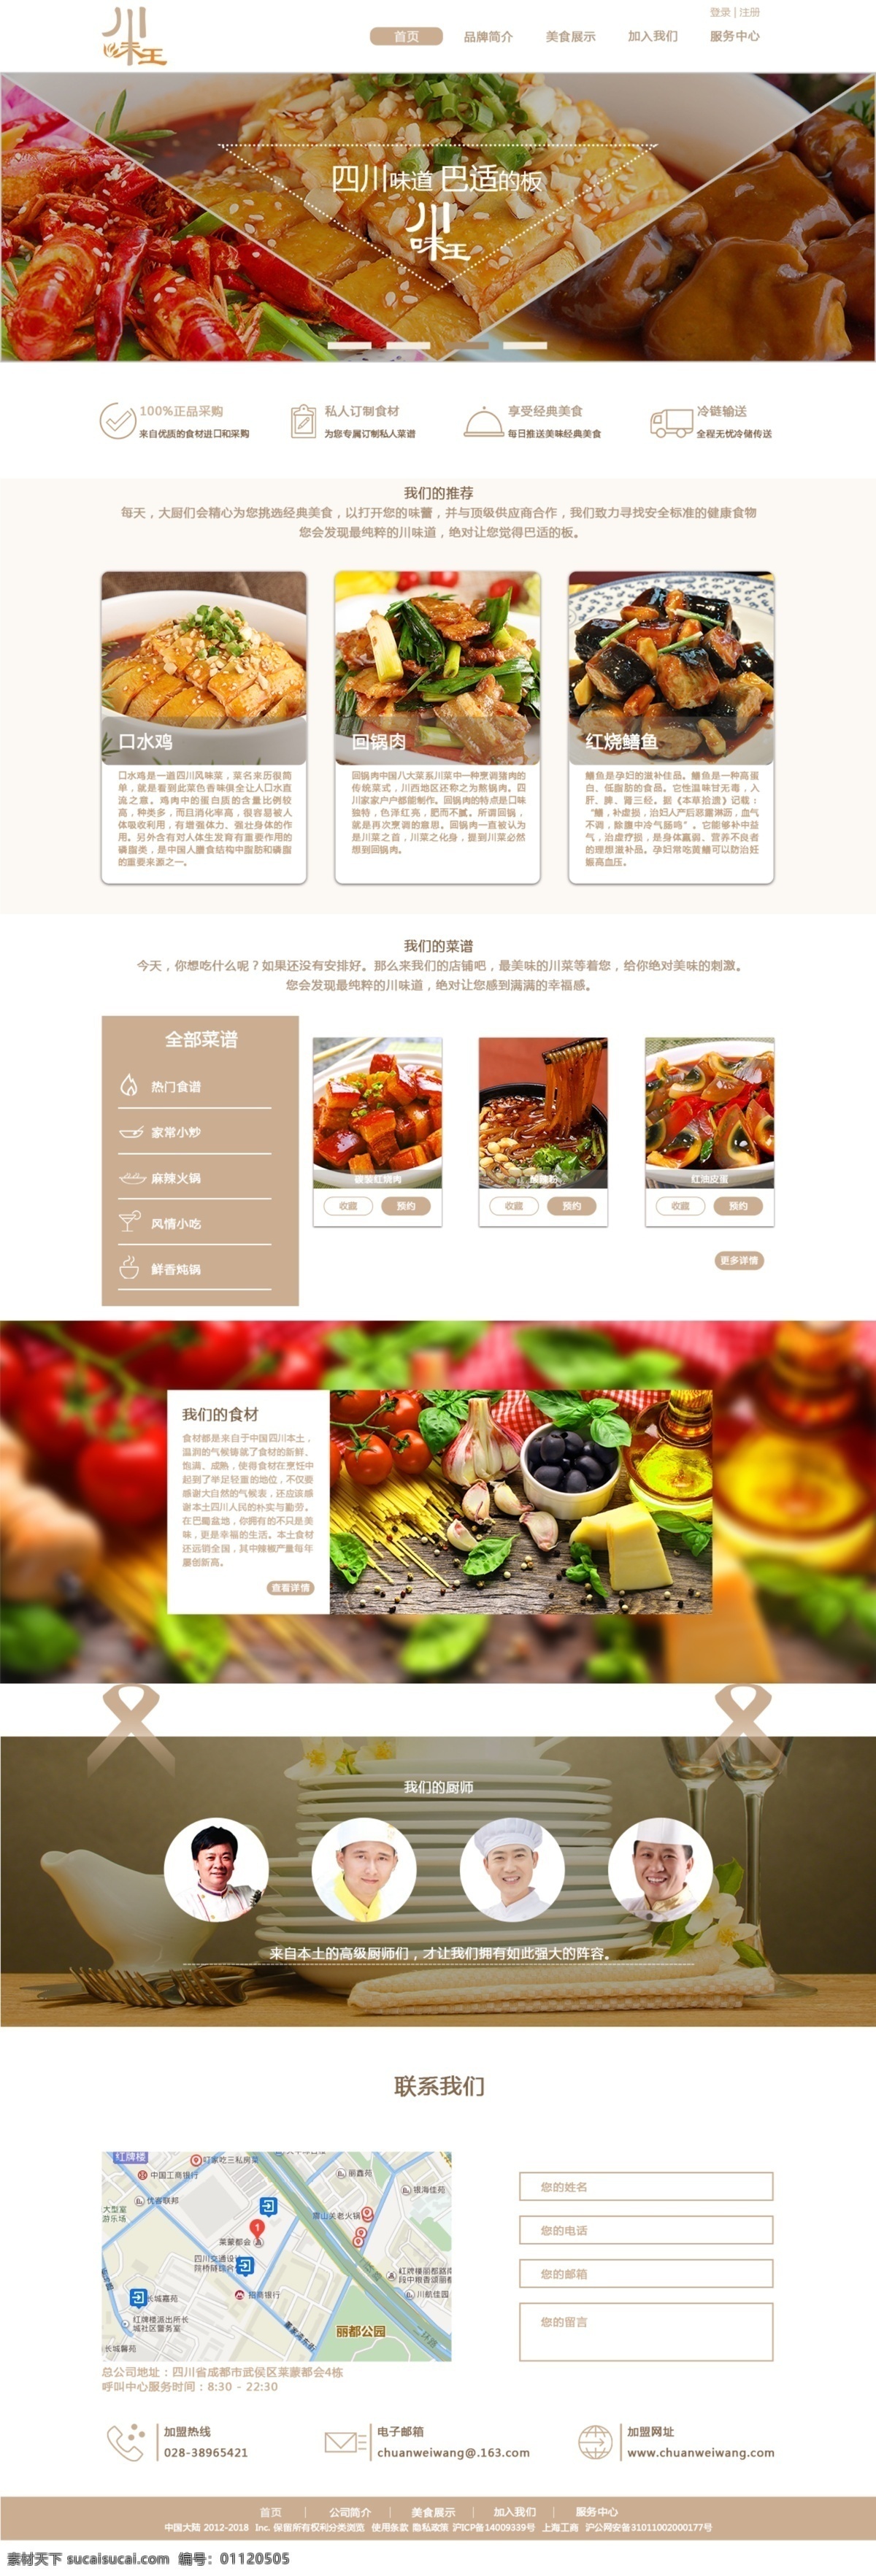 川味 王 连锁 门店 主页 网页设计 源文件 川菜 版式 色彩